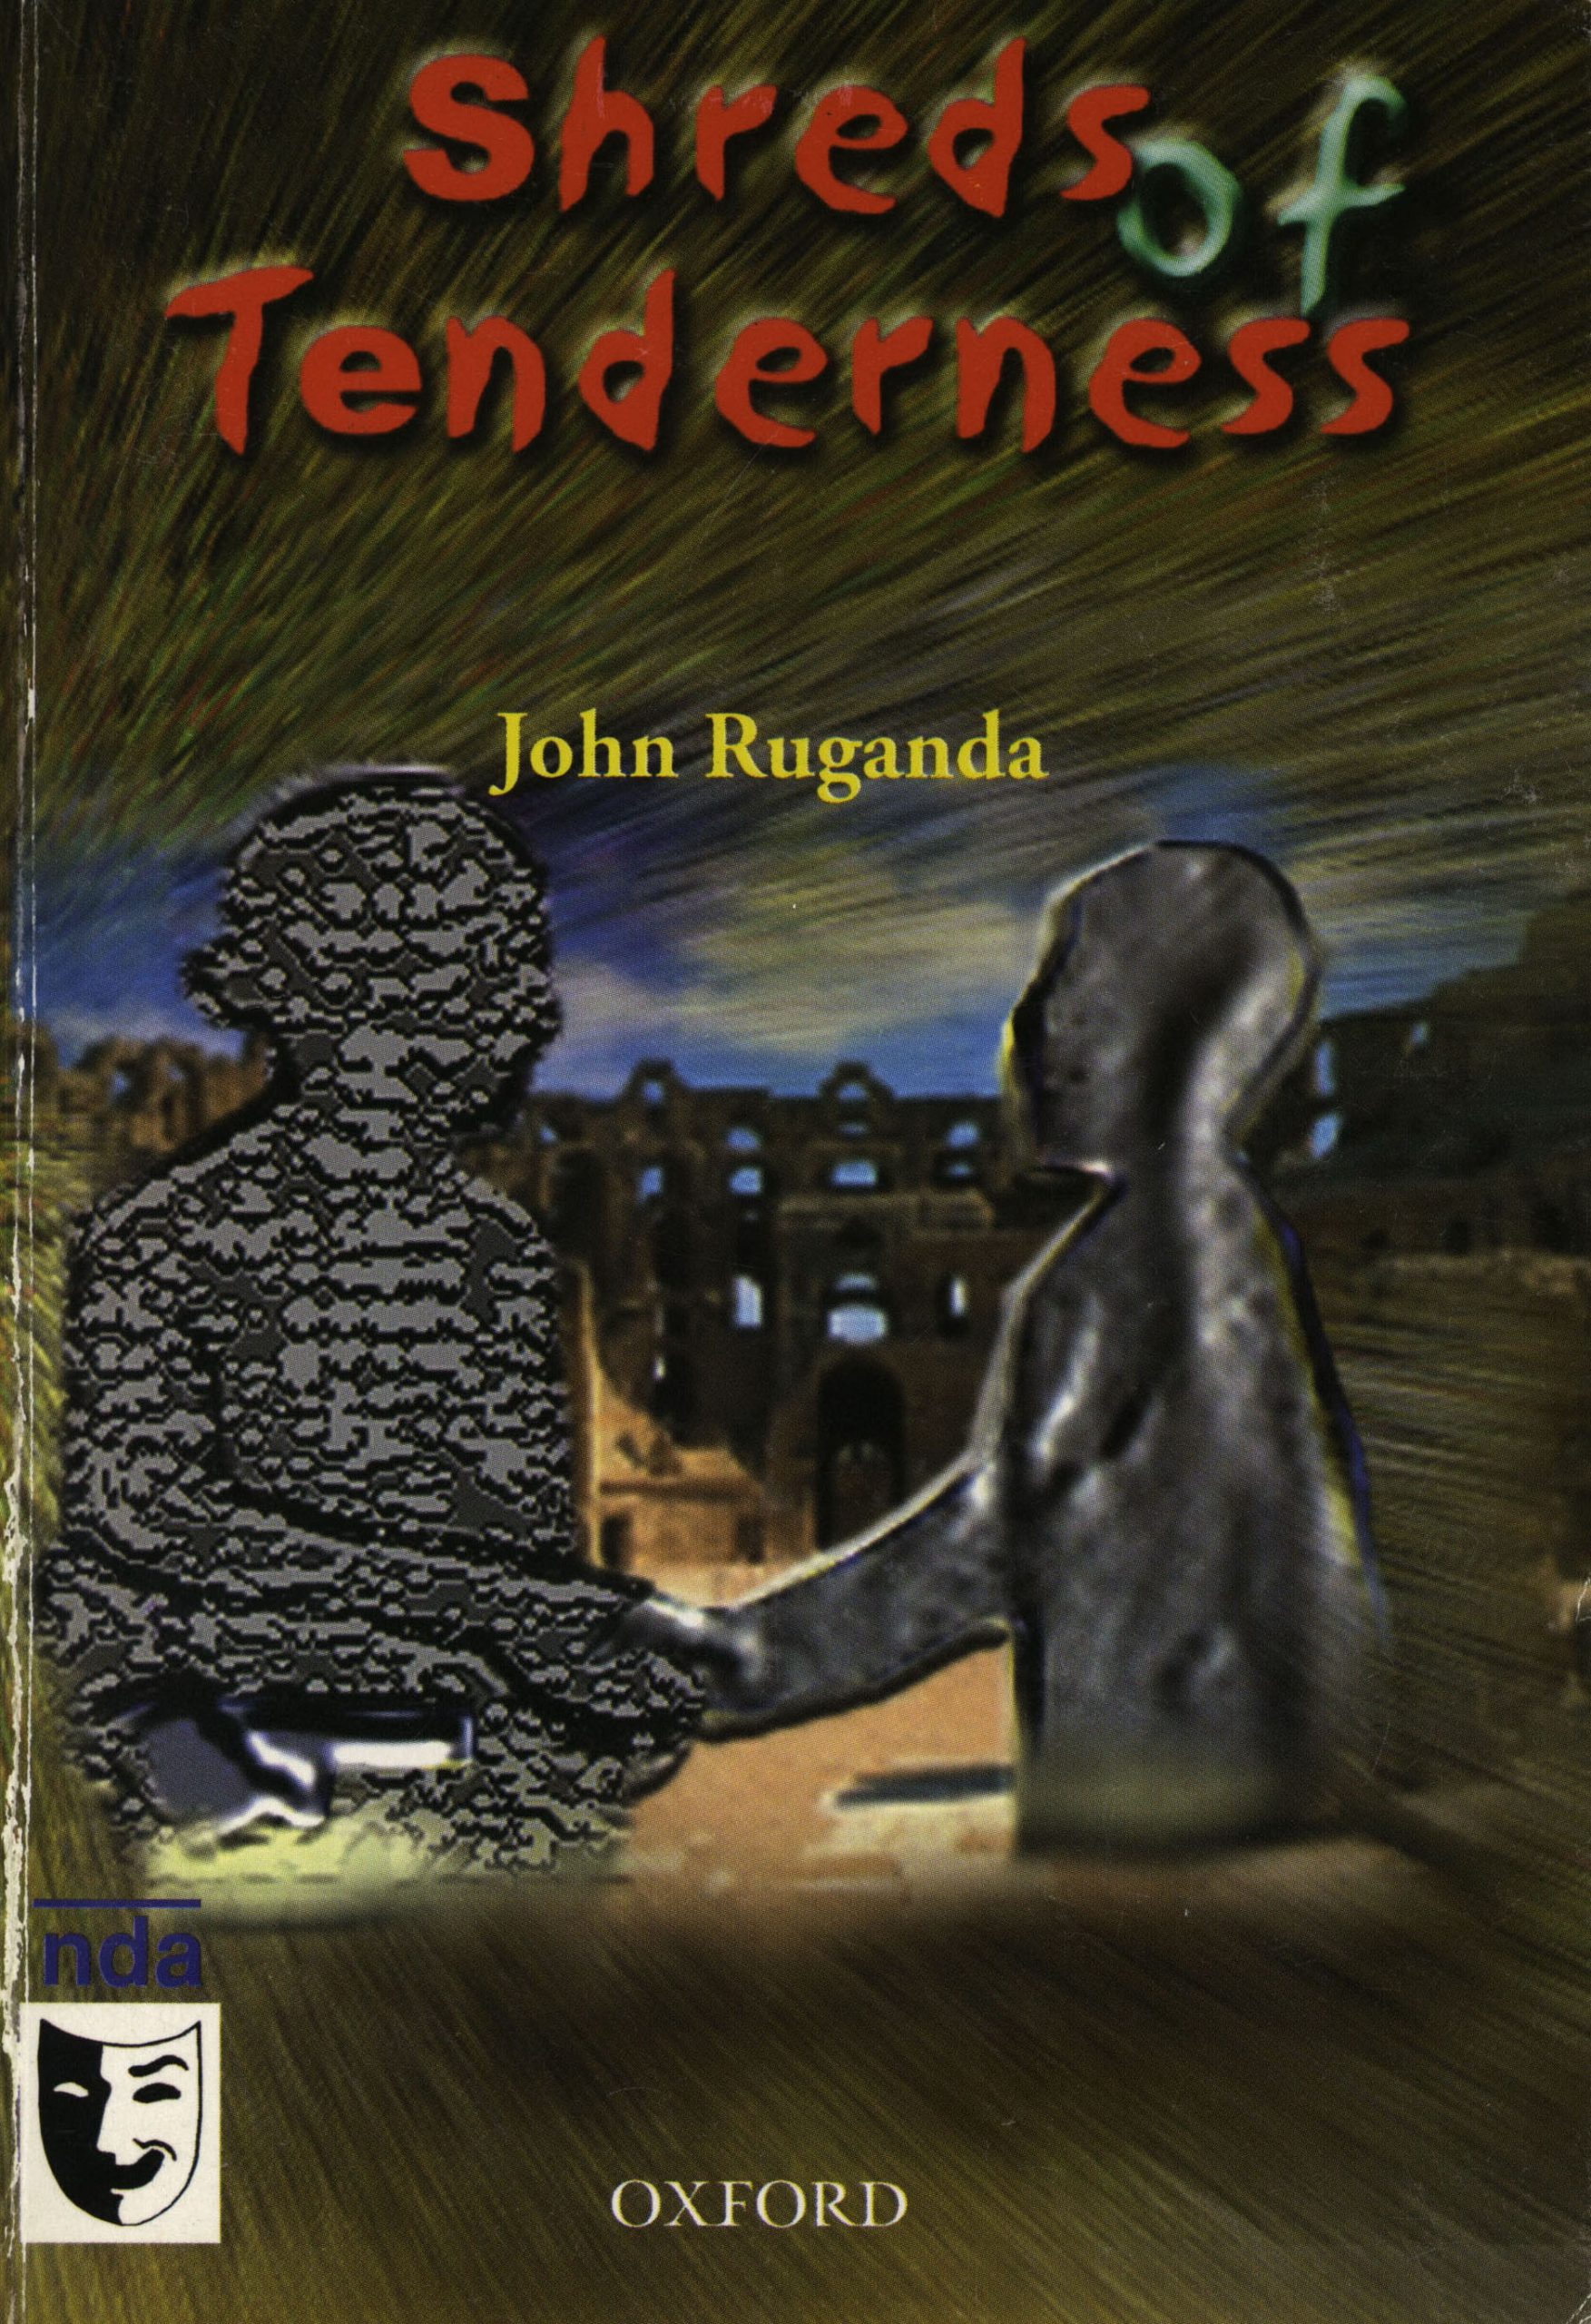 Shreds of Tenderness by John Ruganda